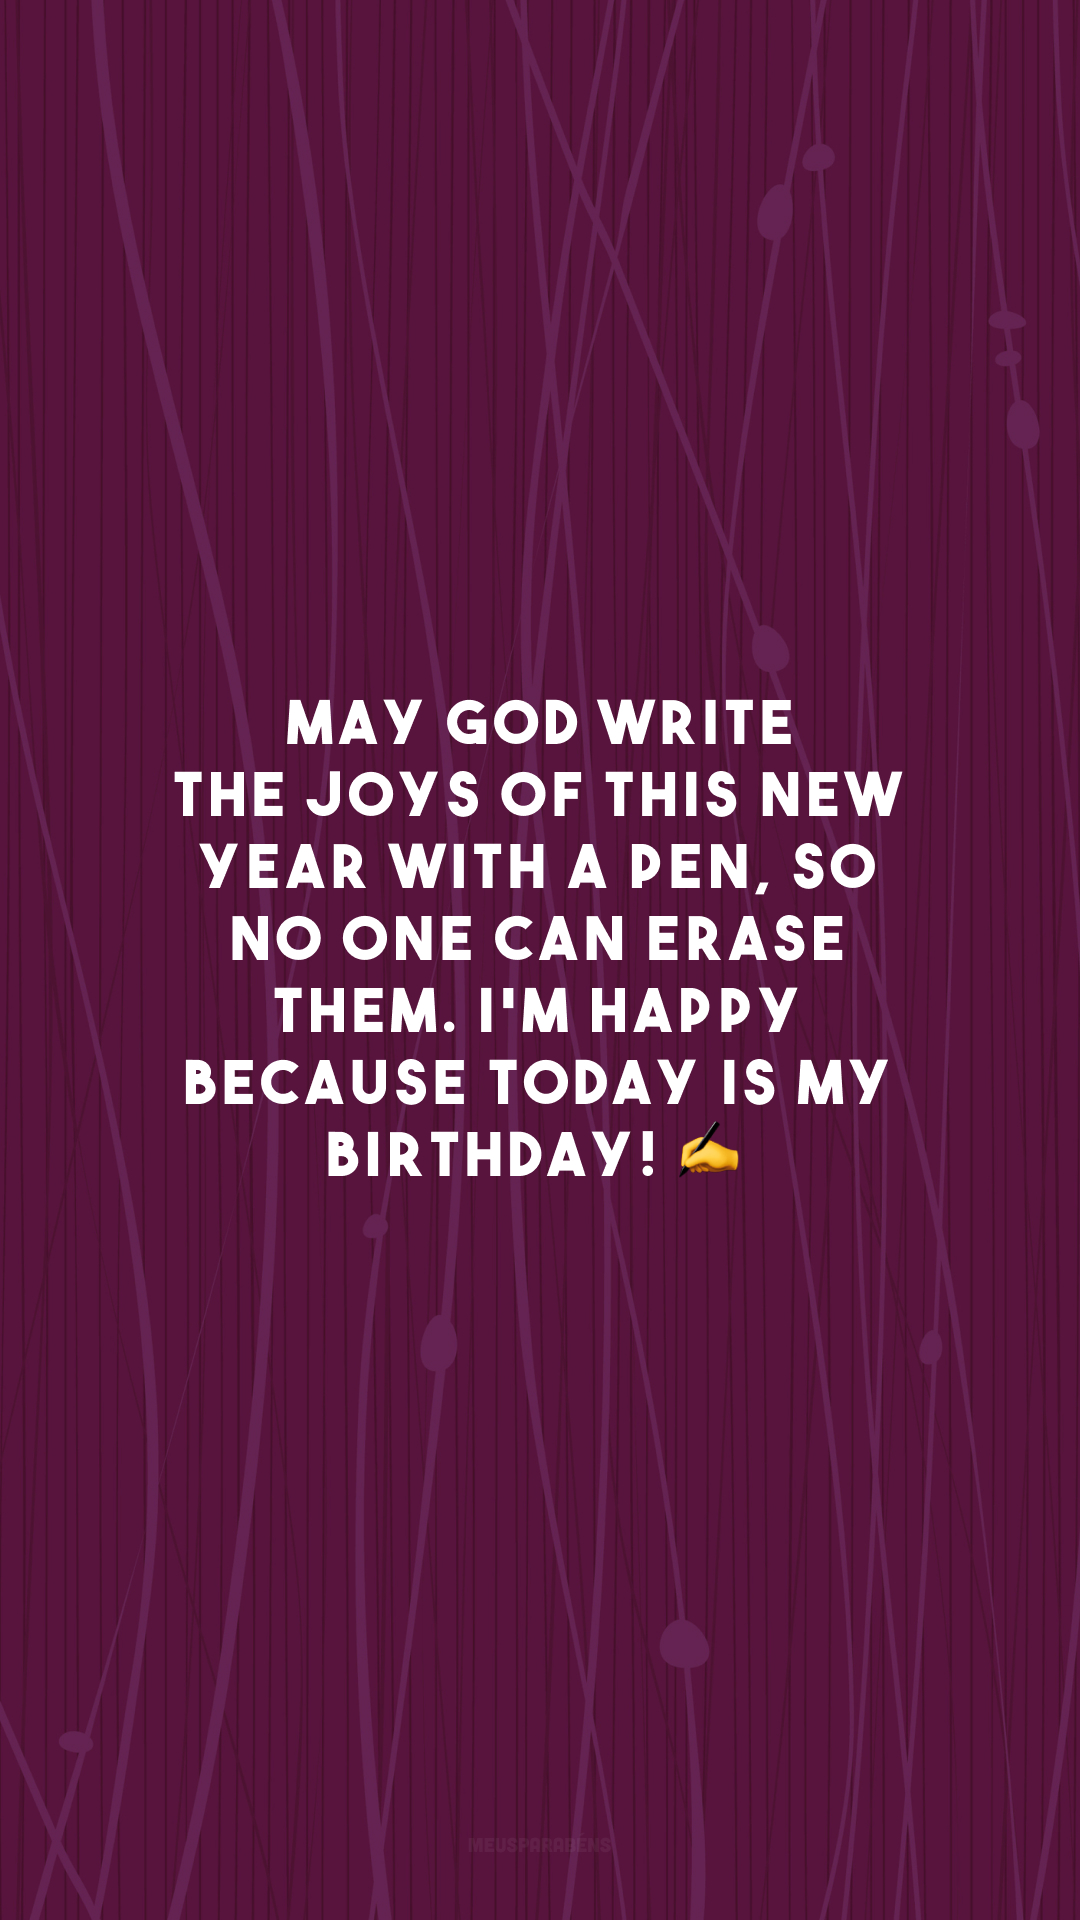 May God write the joys of this new year with a pen, so no one can erase them. I'm happy because today is my birthday! ✍

<p>(Que Deus escreva as alegrias desse novo ano de caneta para que ninguém consiga apagá-las. Estou feliz porque hoje é meu aniversário!)<p>